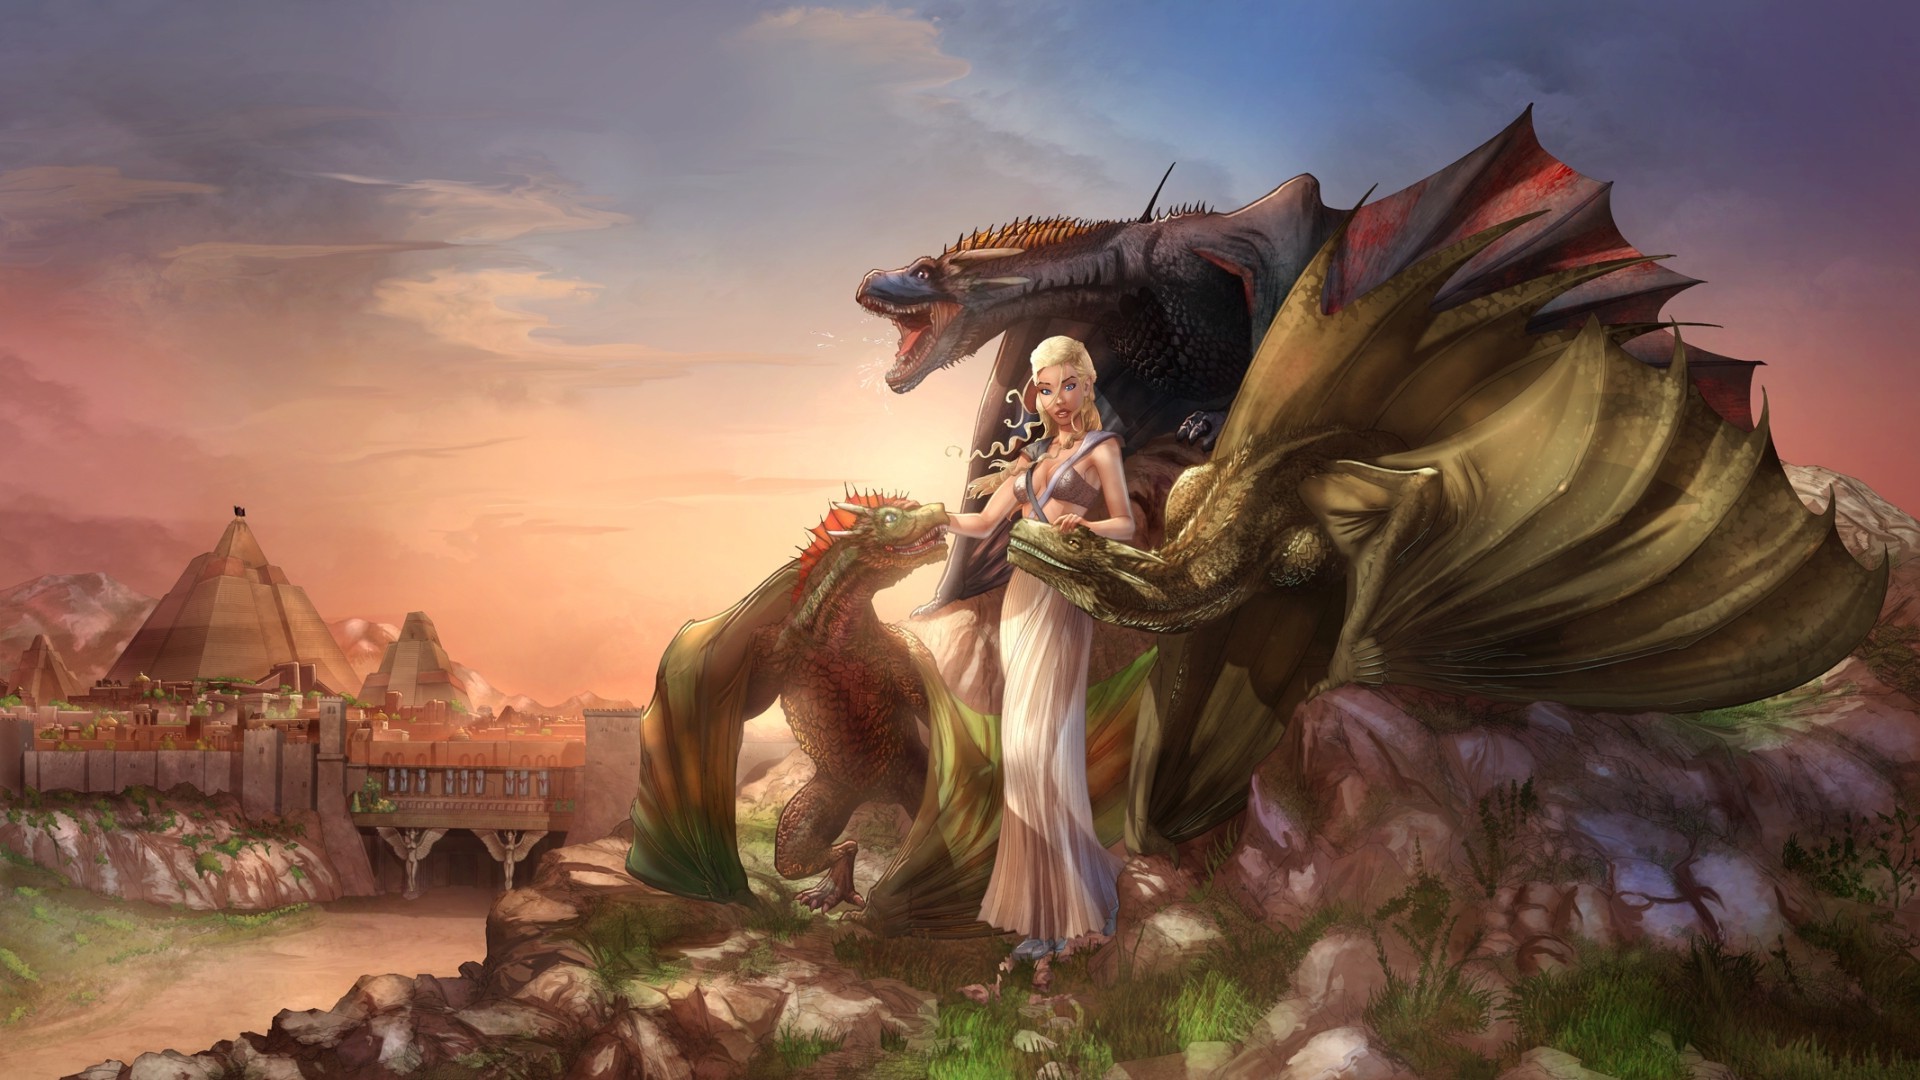 daenerys fondos de pantalla hd,cg artwork,mitología,personaje de ficción,cielo,ilustración